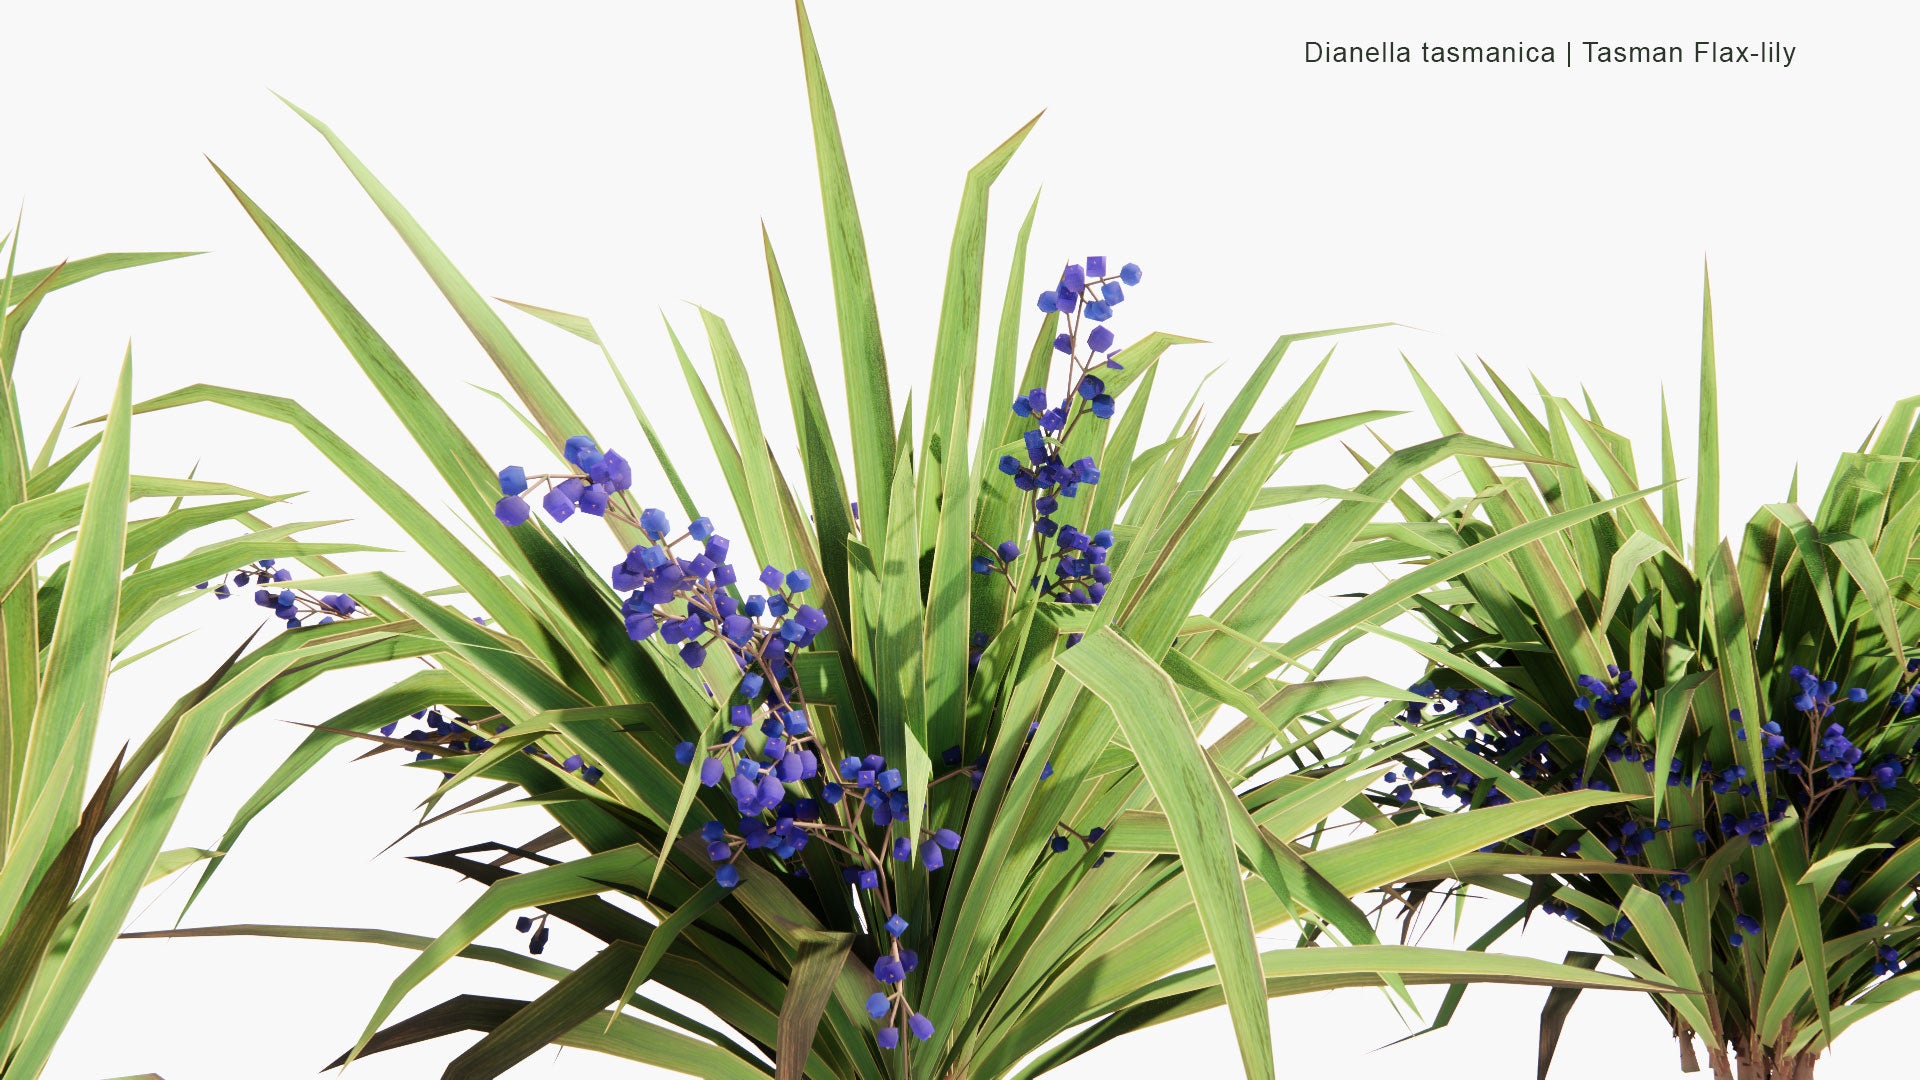 Low Poly Dianella Tasmanica - Tasman Flax-Lily, Tasmanian Flax-Lily (3D Model)